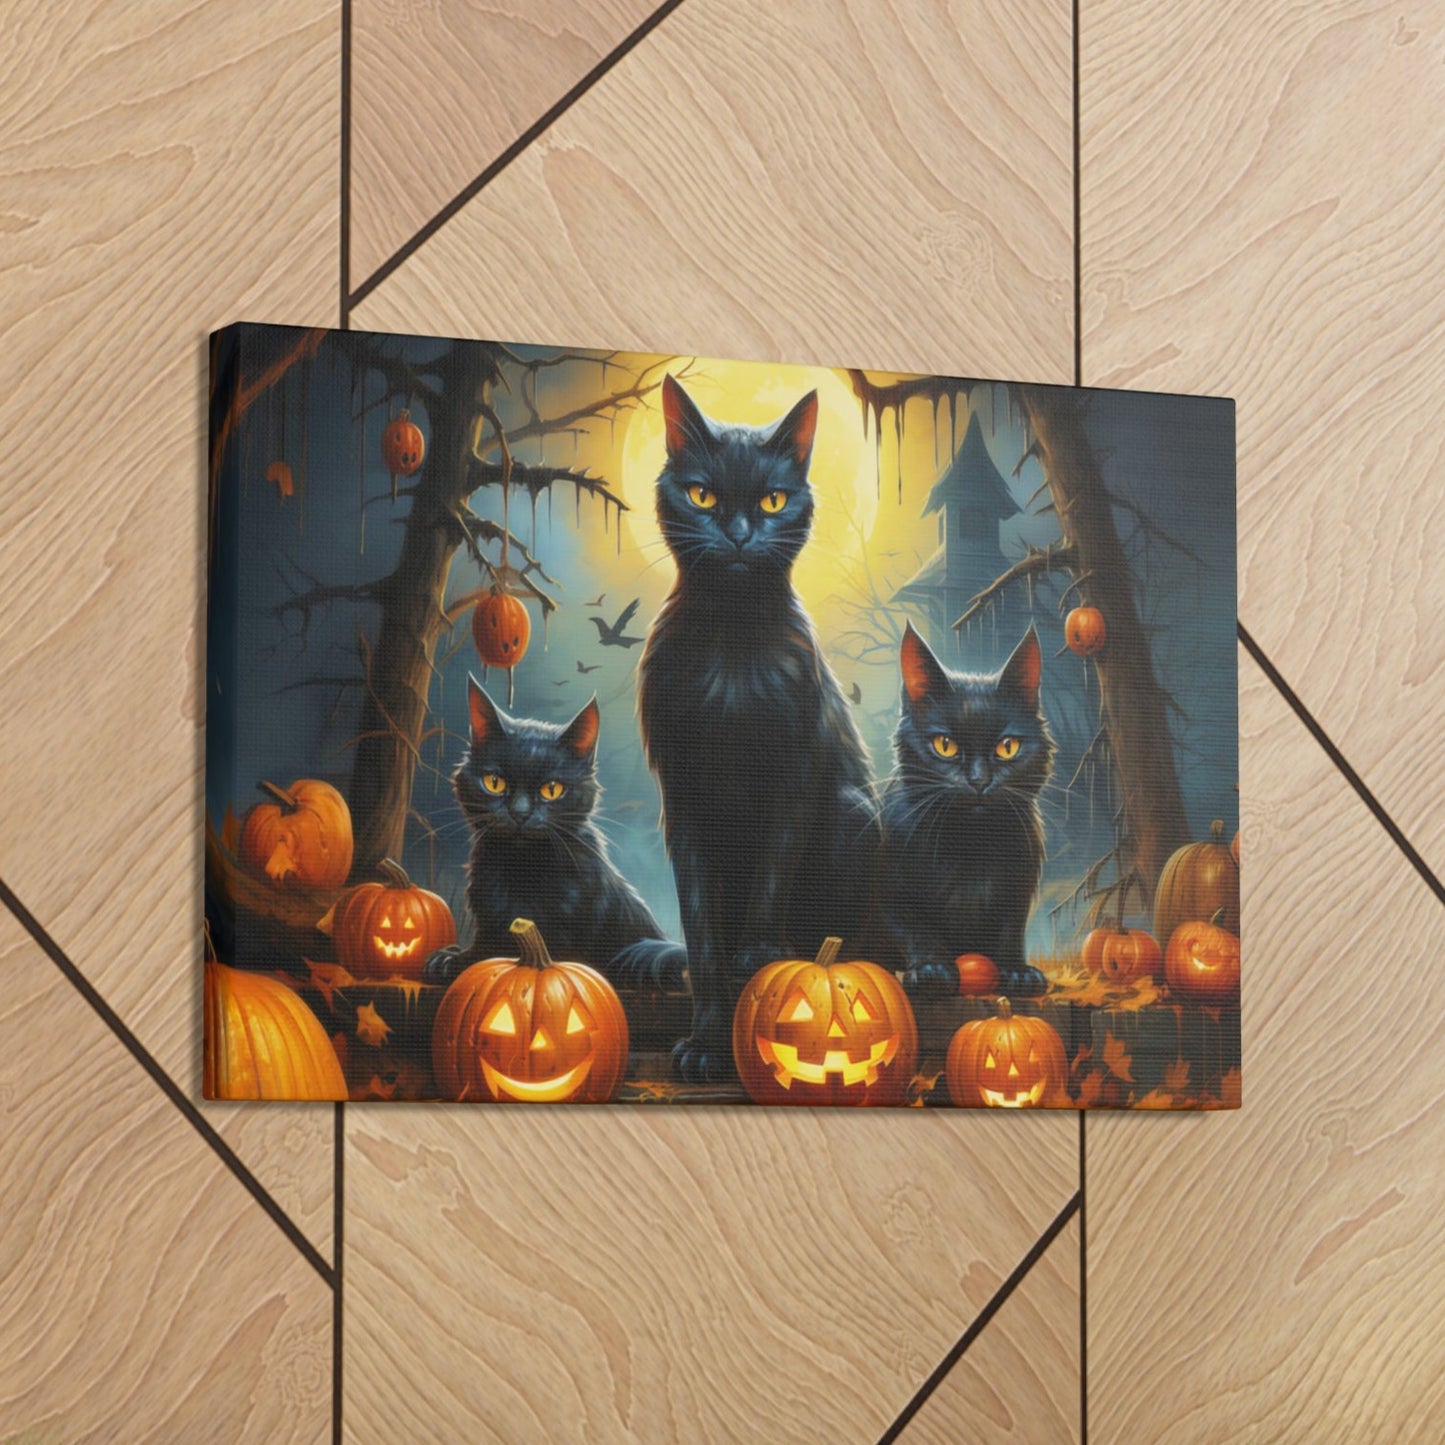 Halloween scene art cute black cats pumpkins